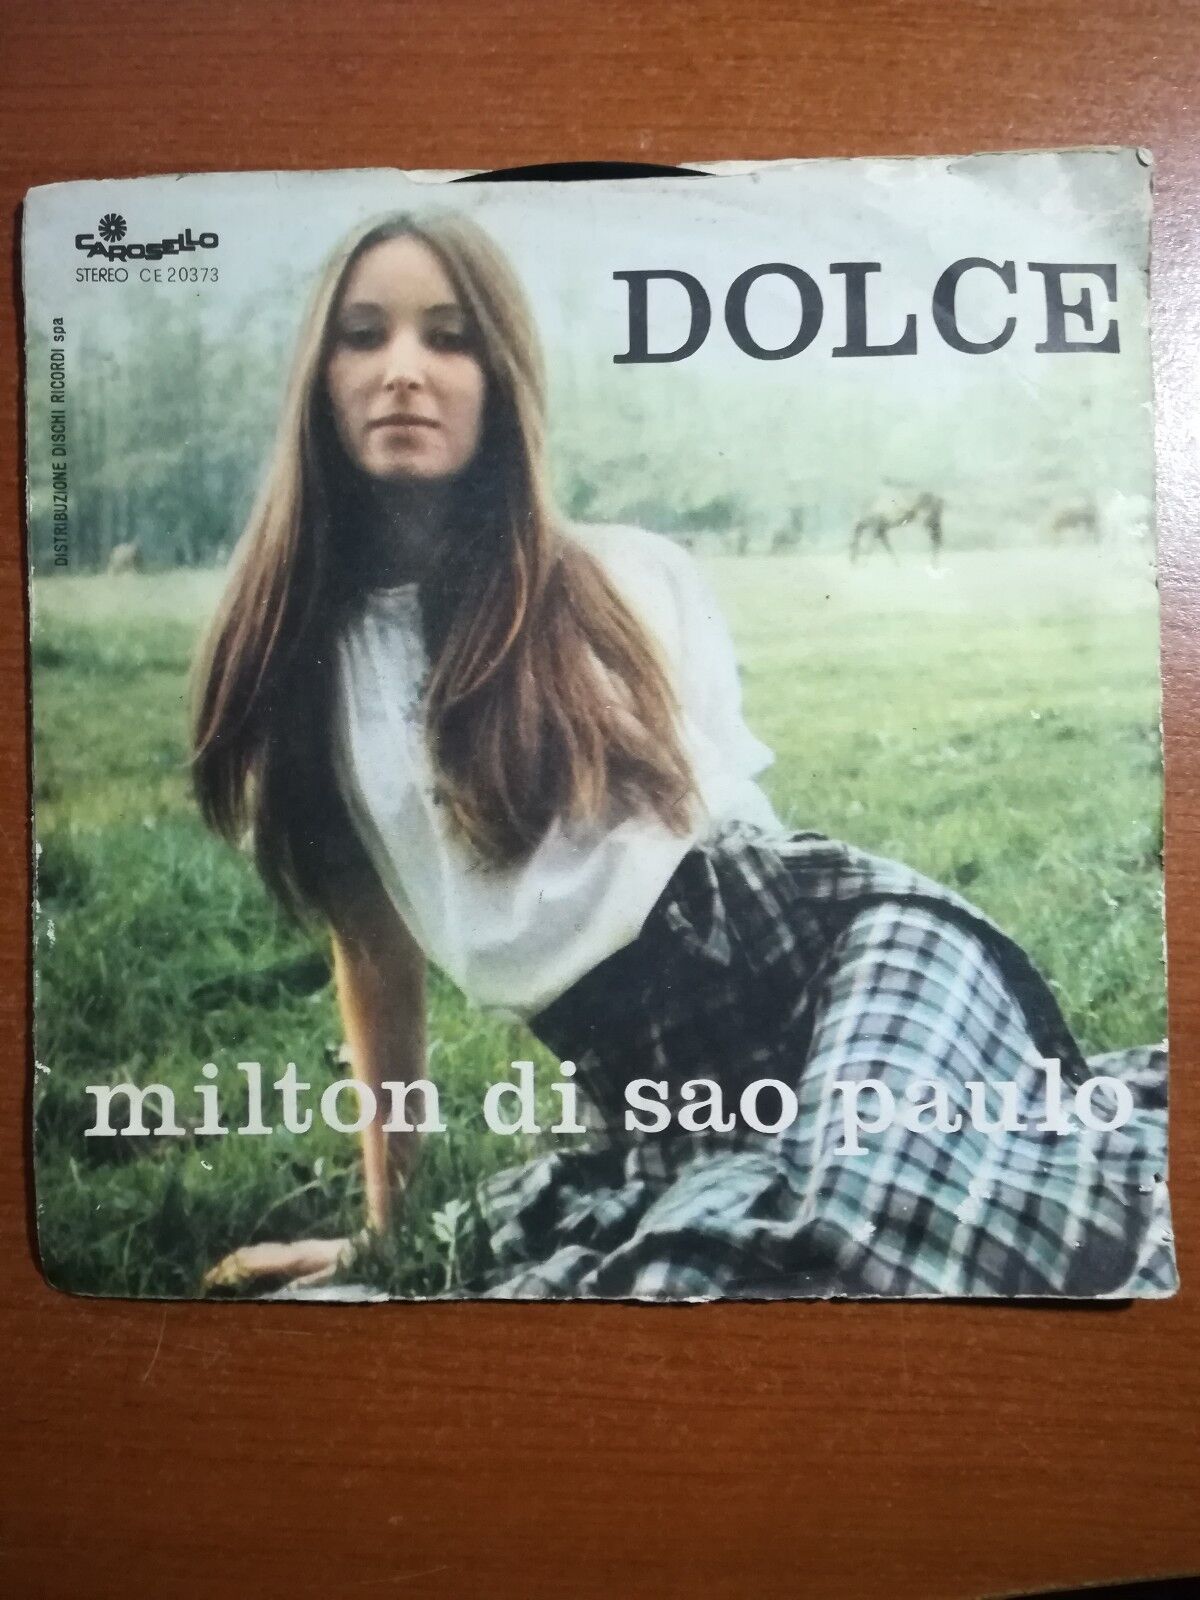 dolce - Milton di sao paulo - 1974 - 45 giri - M